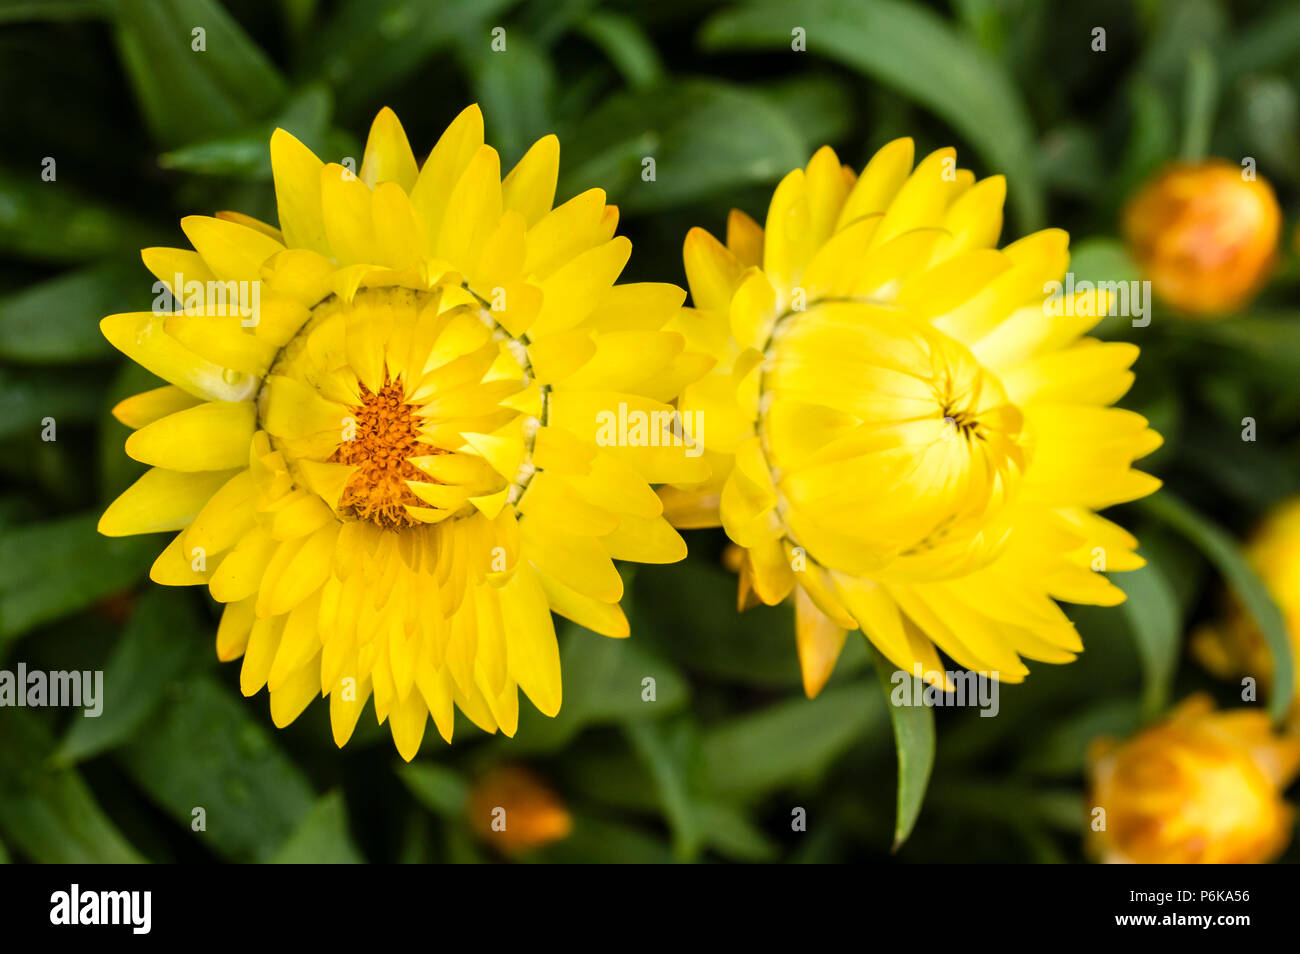 Stroh gelb blühende Blumen im Garten Stockfoto